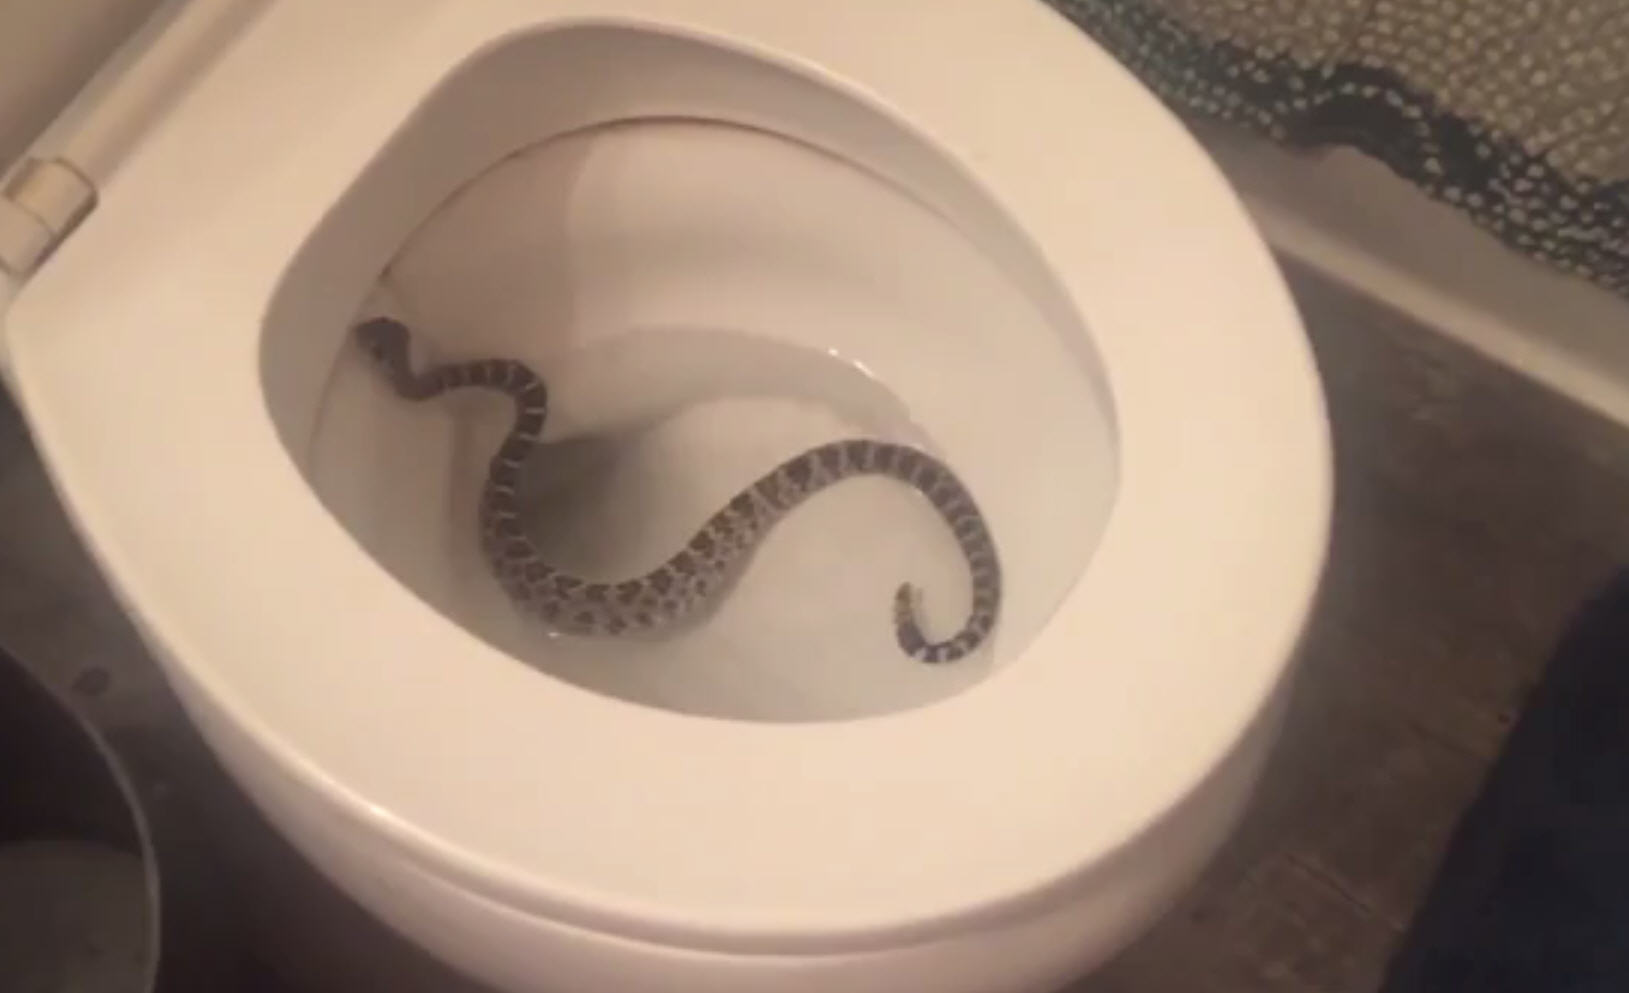 Video: Girlfriend finds rattlesnake in toilet, screams for boyfriend's help - Houston ...1629 x 993